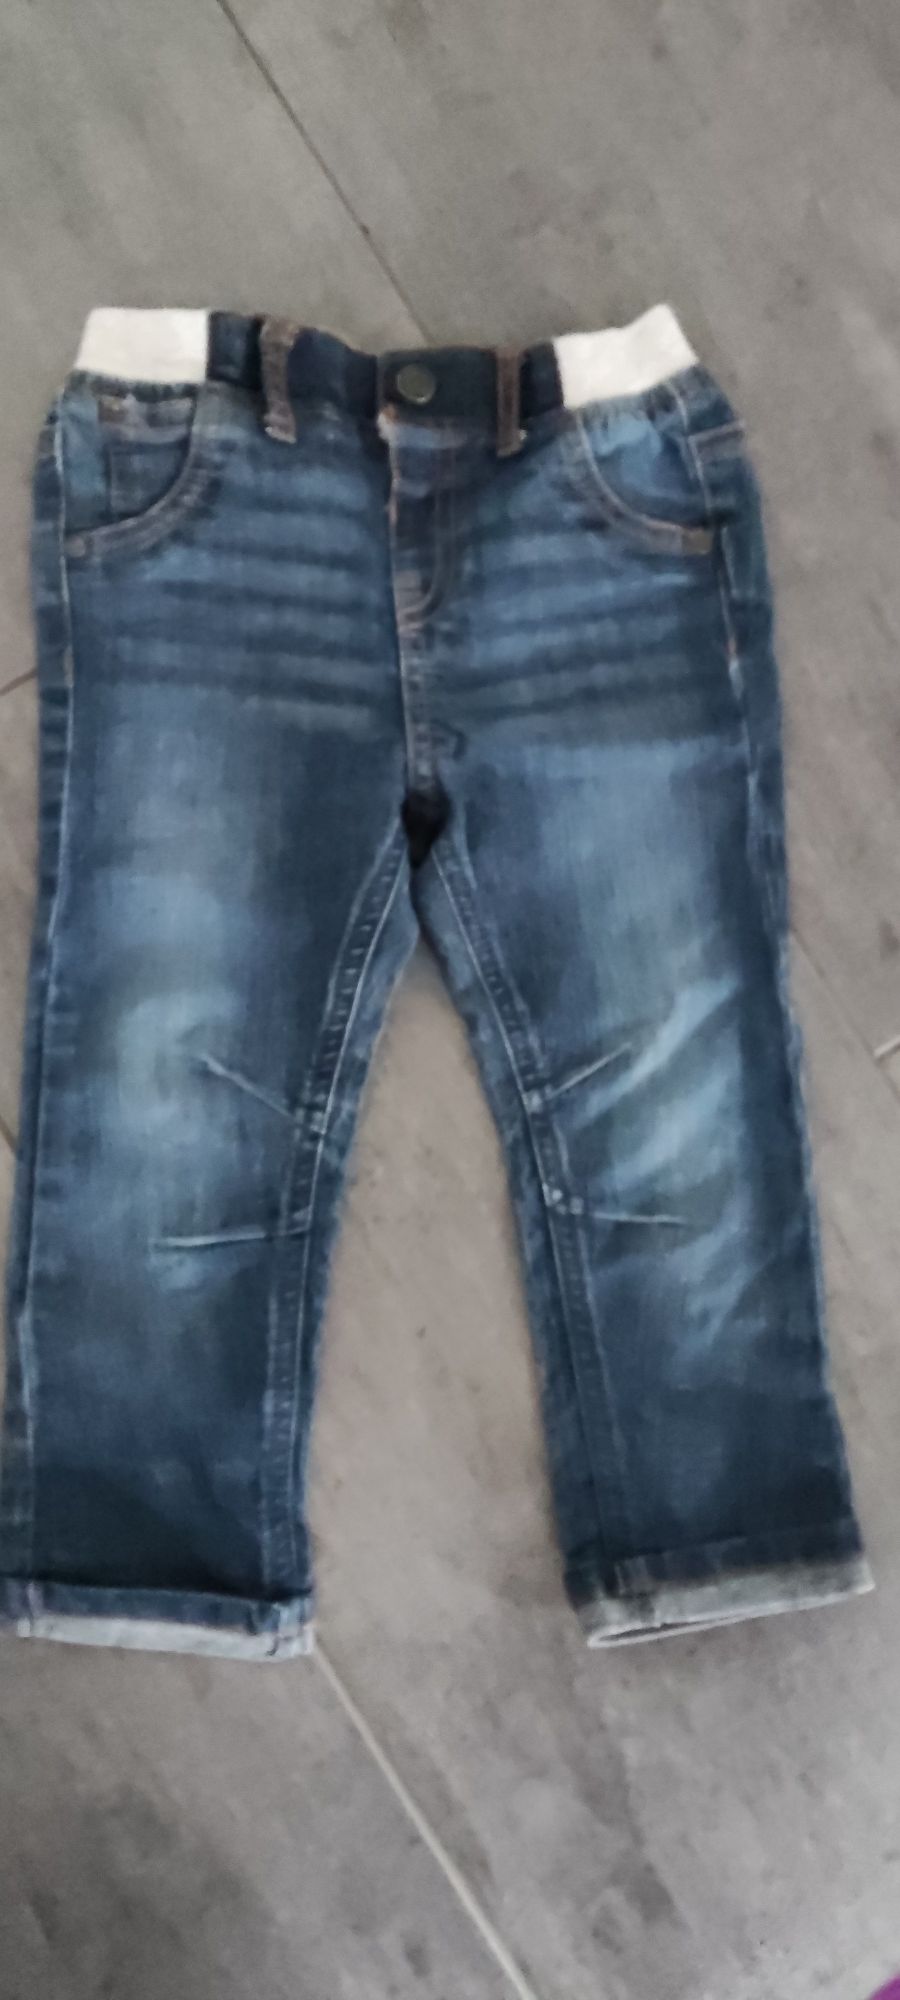 Spodnie jeansy F&F, rozmiar 92 (18-24 miesięcy).